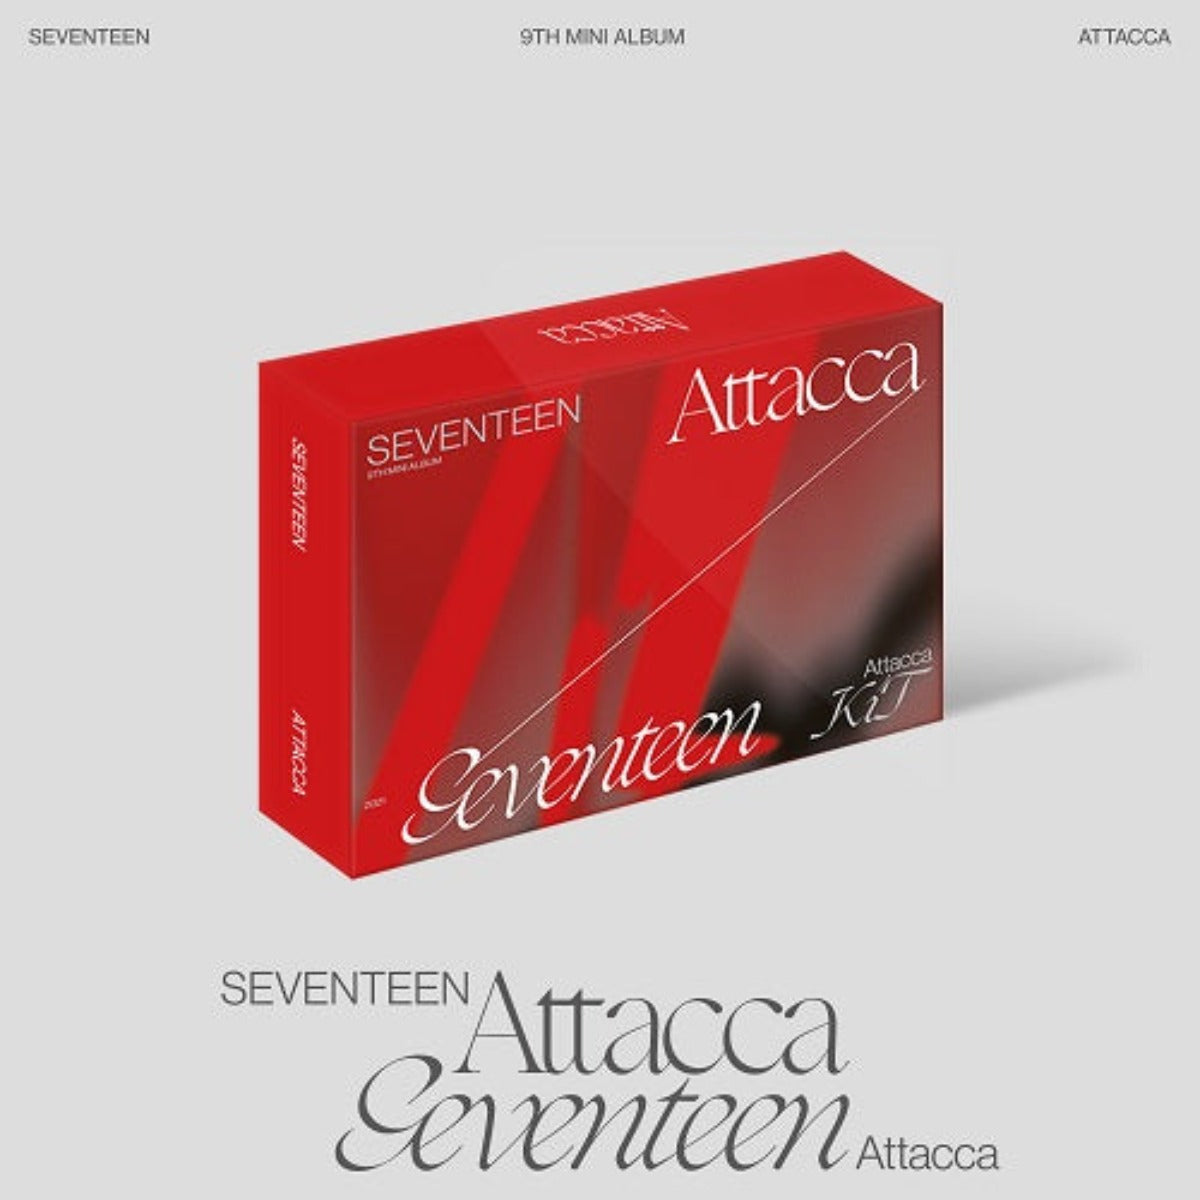 SEVENTEEN Mini Album Vol. 9 - Attacca (Kit Album)